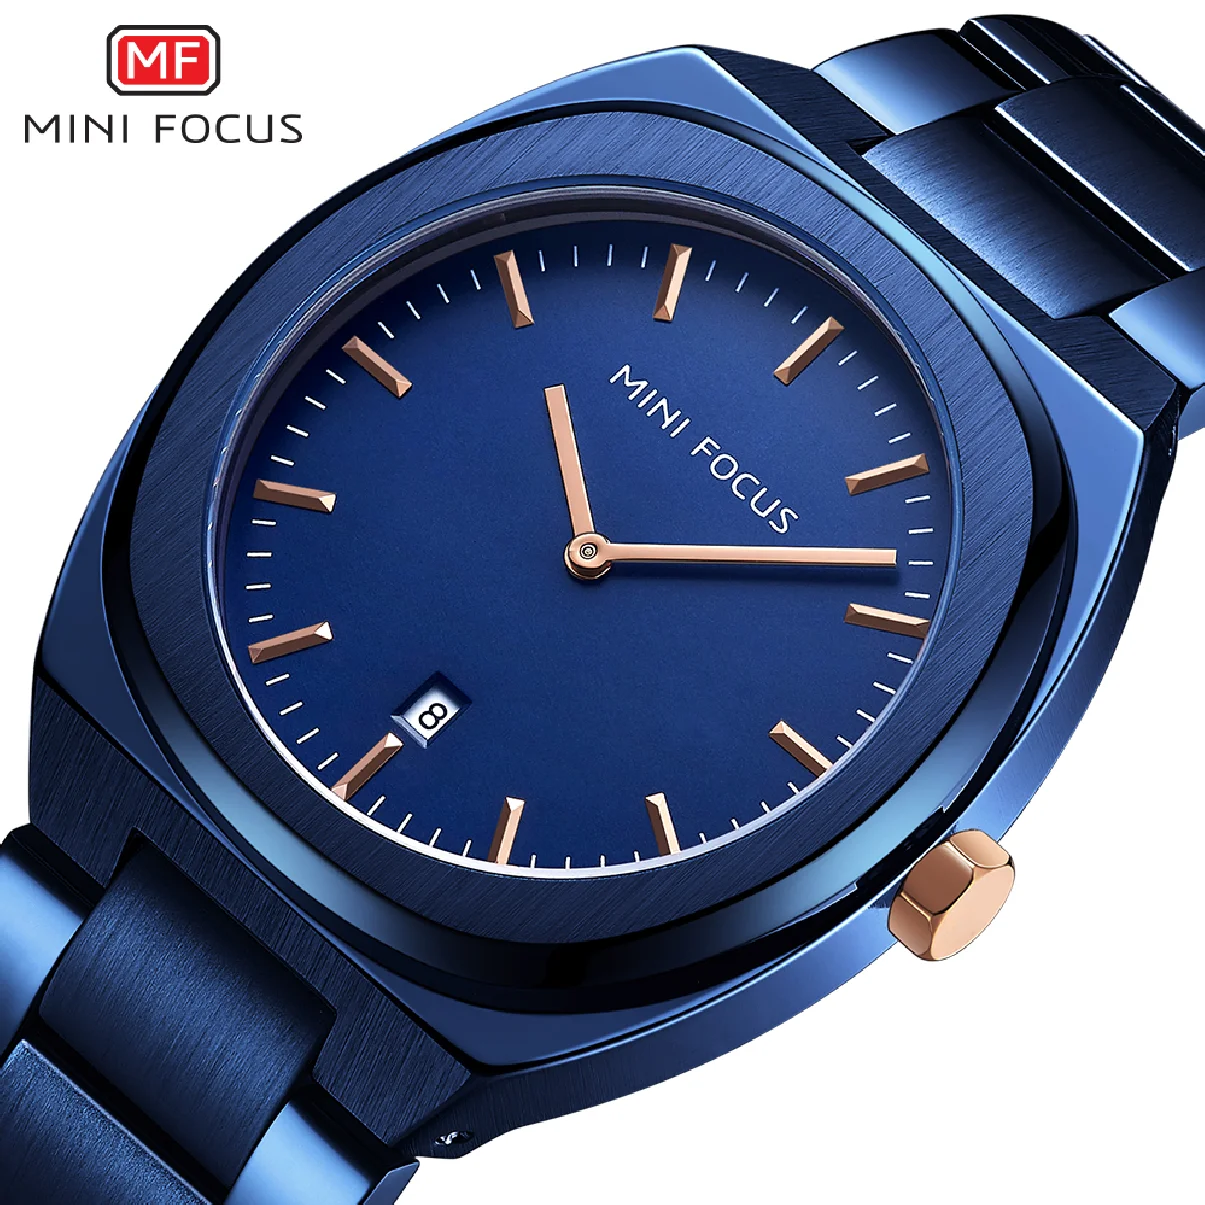 

Мужские часы MINI FOCUS из нержавеющей стали брендовые Роскошные брендовые деловые часы водонепроницаемые кварцевые наручные часы с отображен...